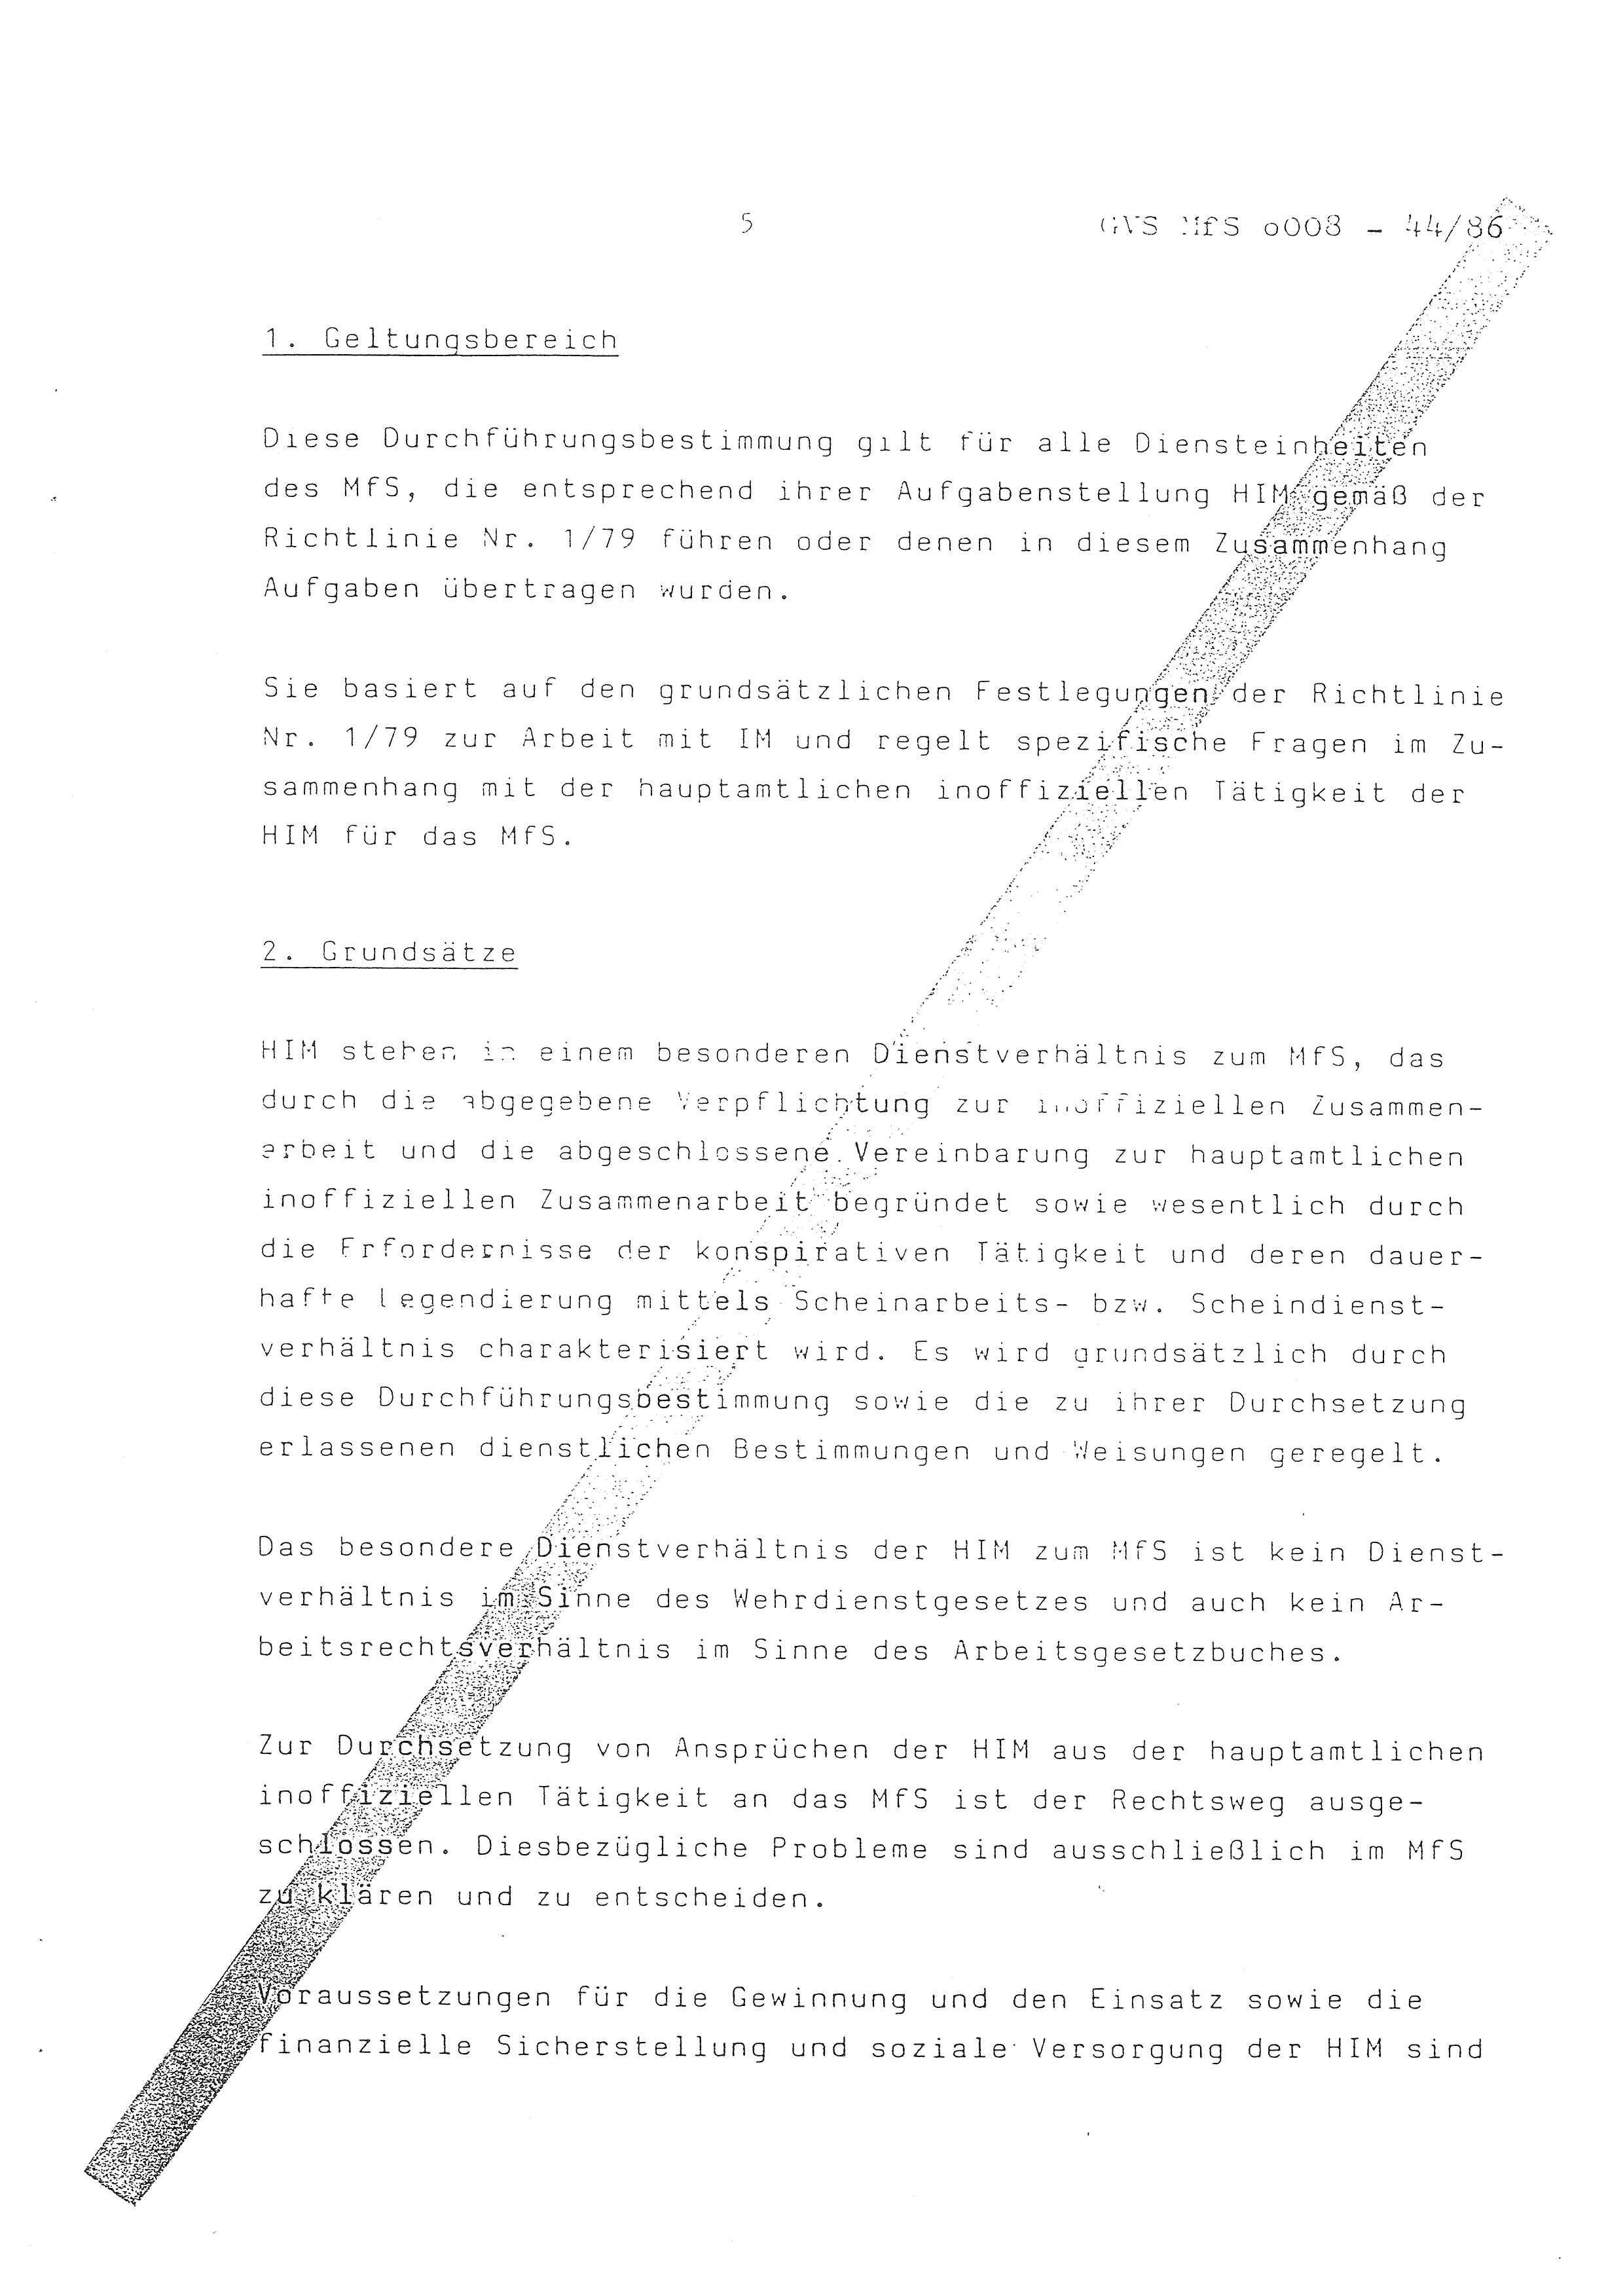 2. Durchführungsbestimmung zur Richtlinie 1/79 über die Arbeit mit hauptamtlichen Mitarbeitern des MfS (HIM), Deutsche Demokratische Republik (DDR), Ministerium für Staatssicherheit (MfS), Der Minister (Mielke), Geheime Verschlußsache (GVS) ooo8-44/86, Berlin 1986, Seite 5 (2. DB RL 1/79 DDR MfS Min. GVS ooo8-44/86 1986, S. 5)